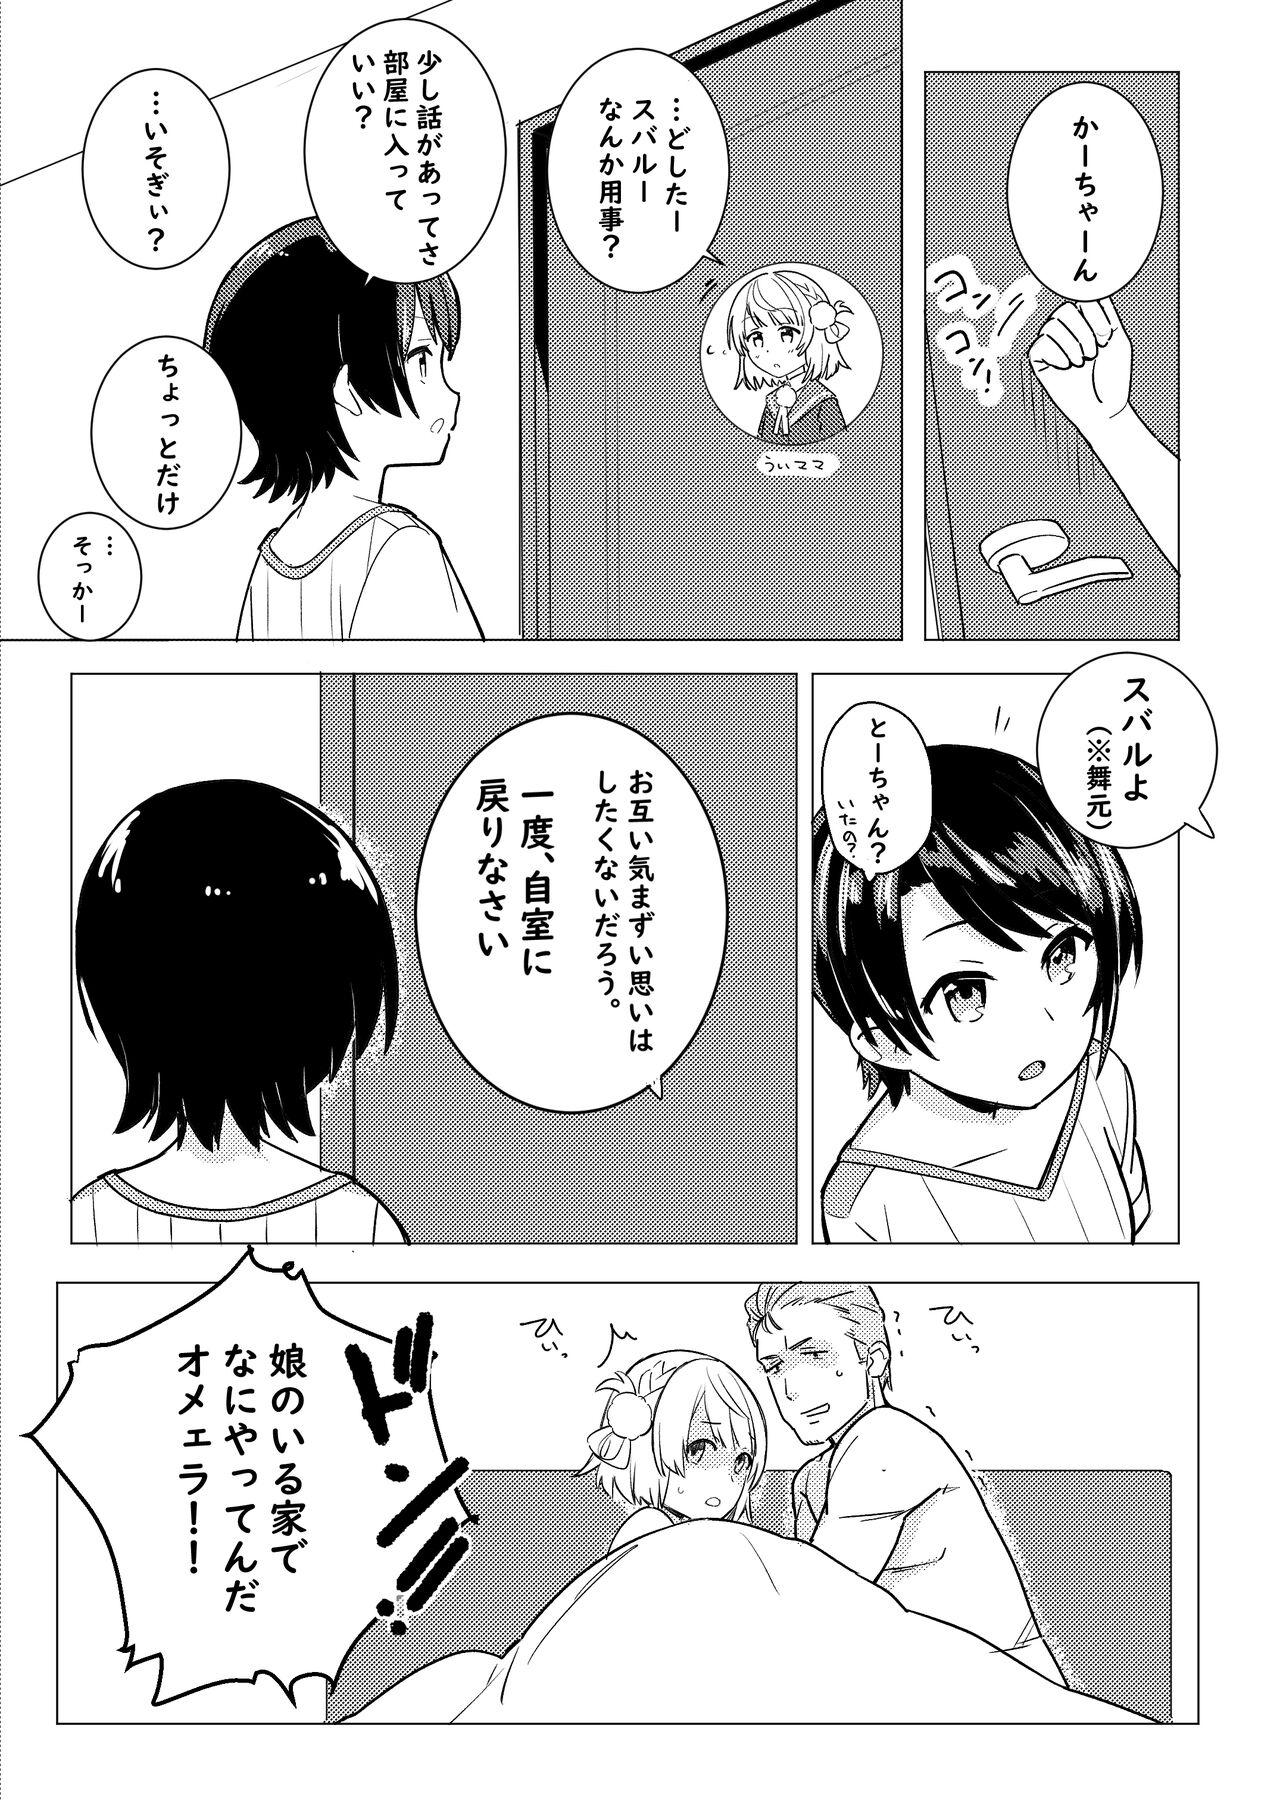 Blowing Twitter Short Manga - Hololive Rabuda - Page 5